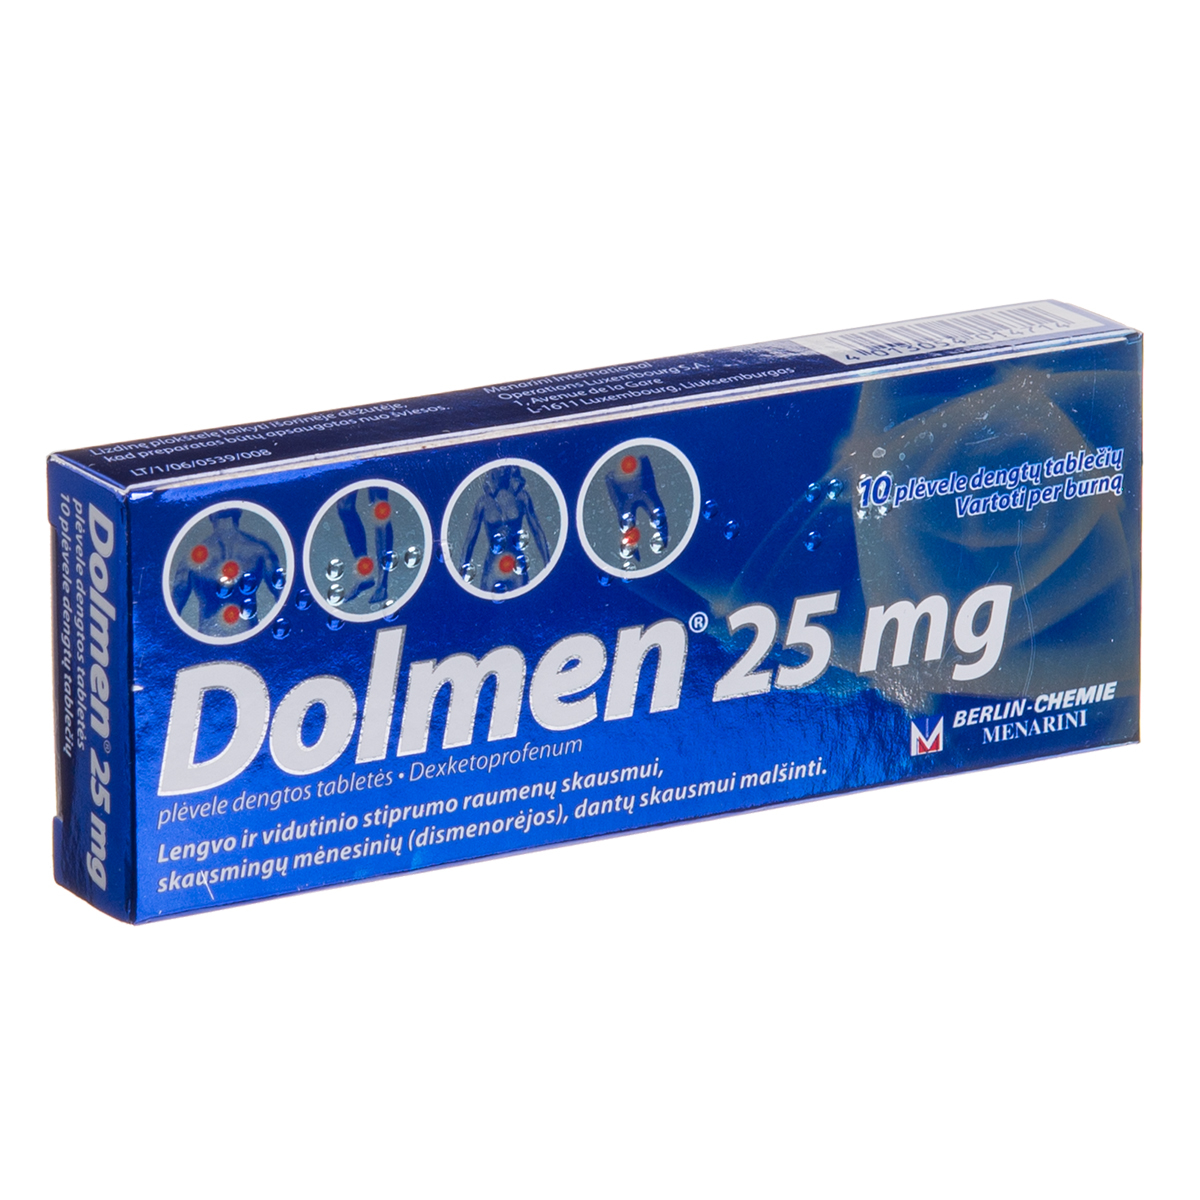 DOLMEN, 25 mg, plėvele dengtos tabletės, N10